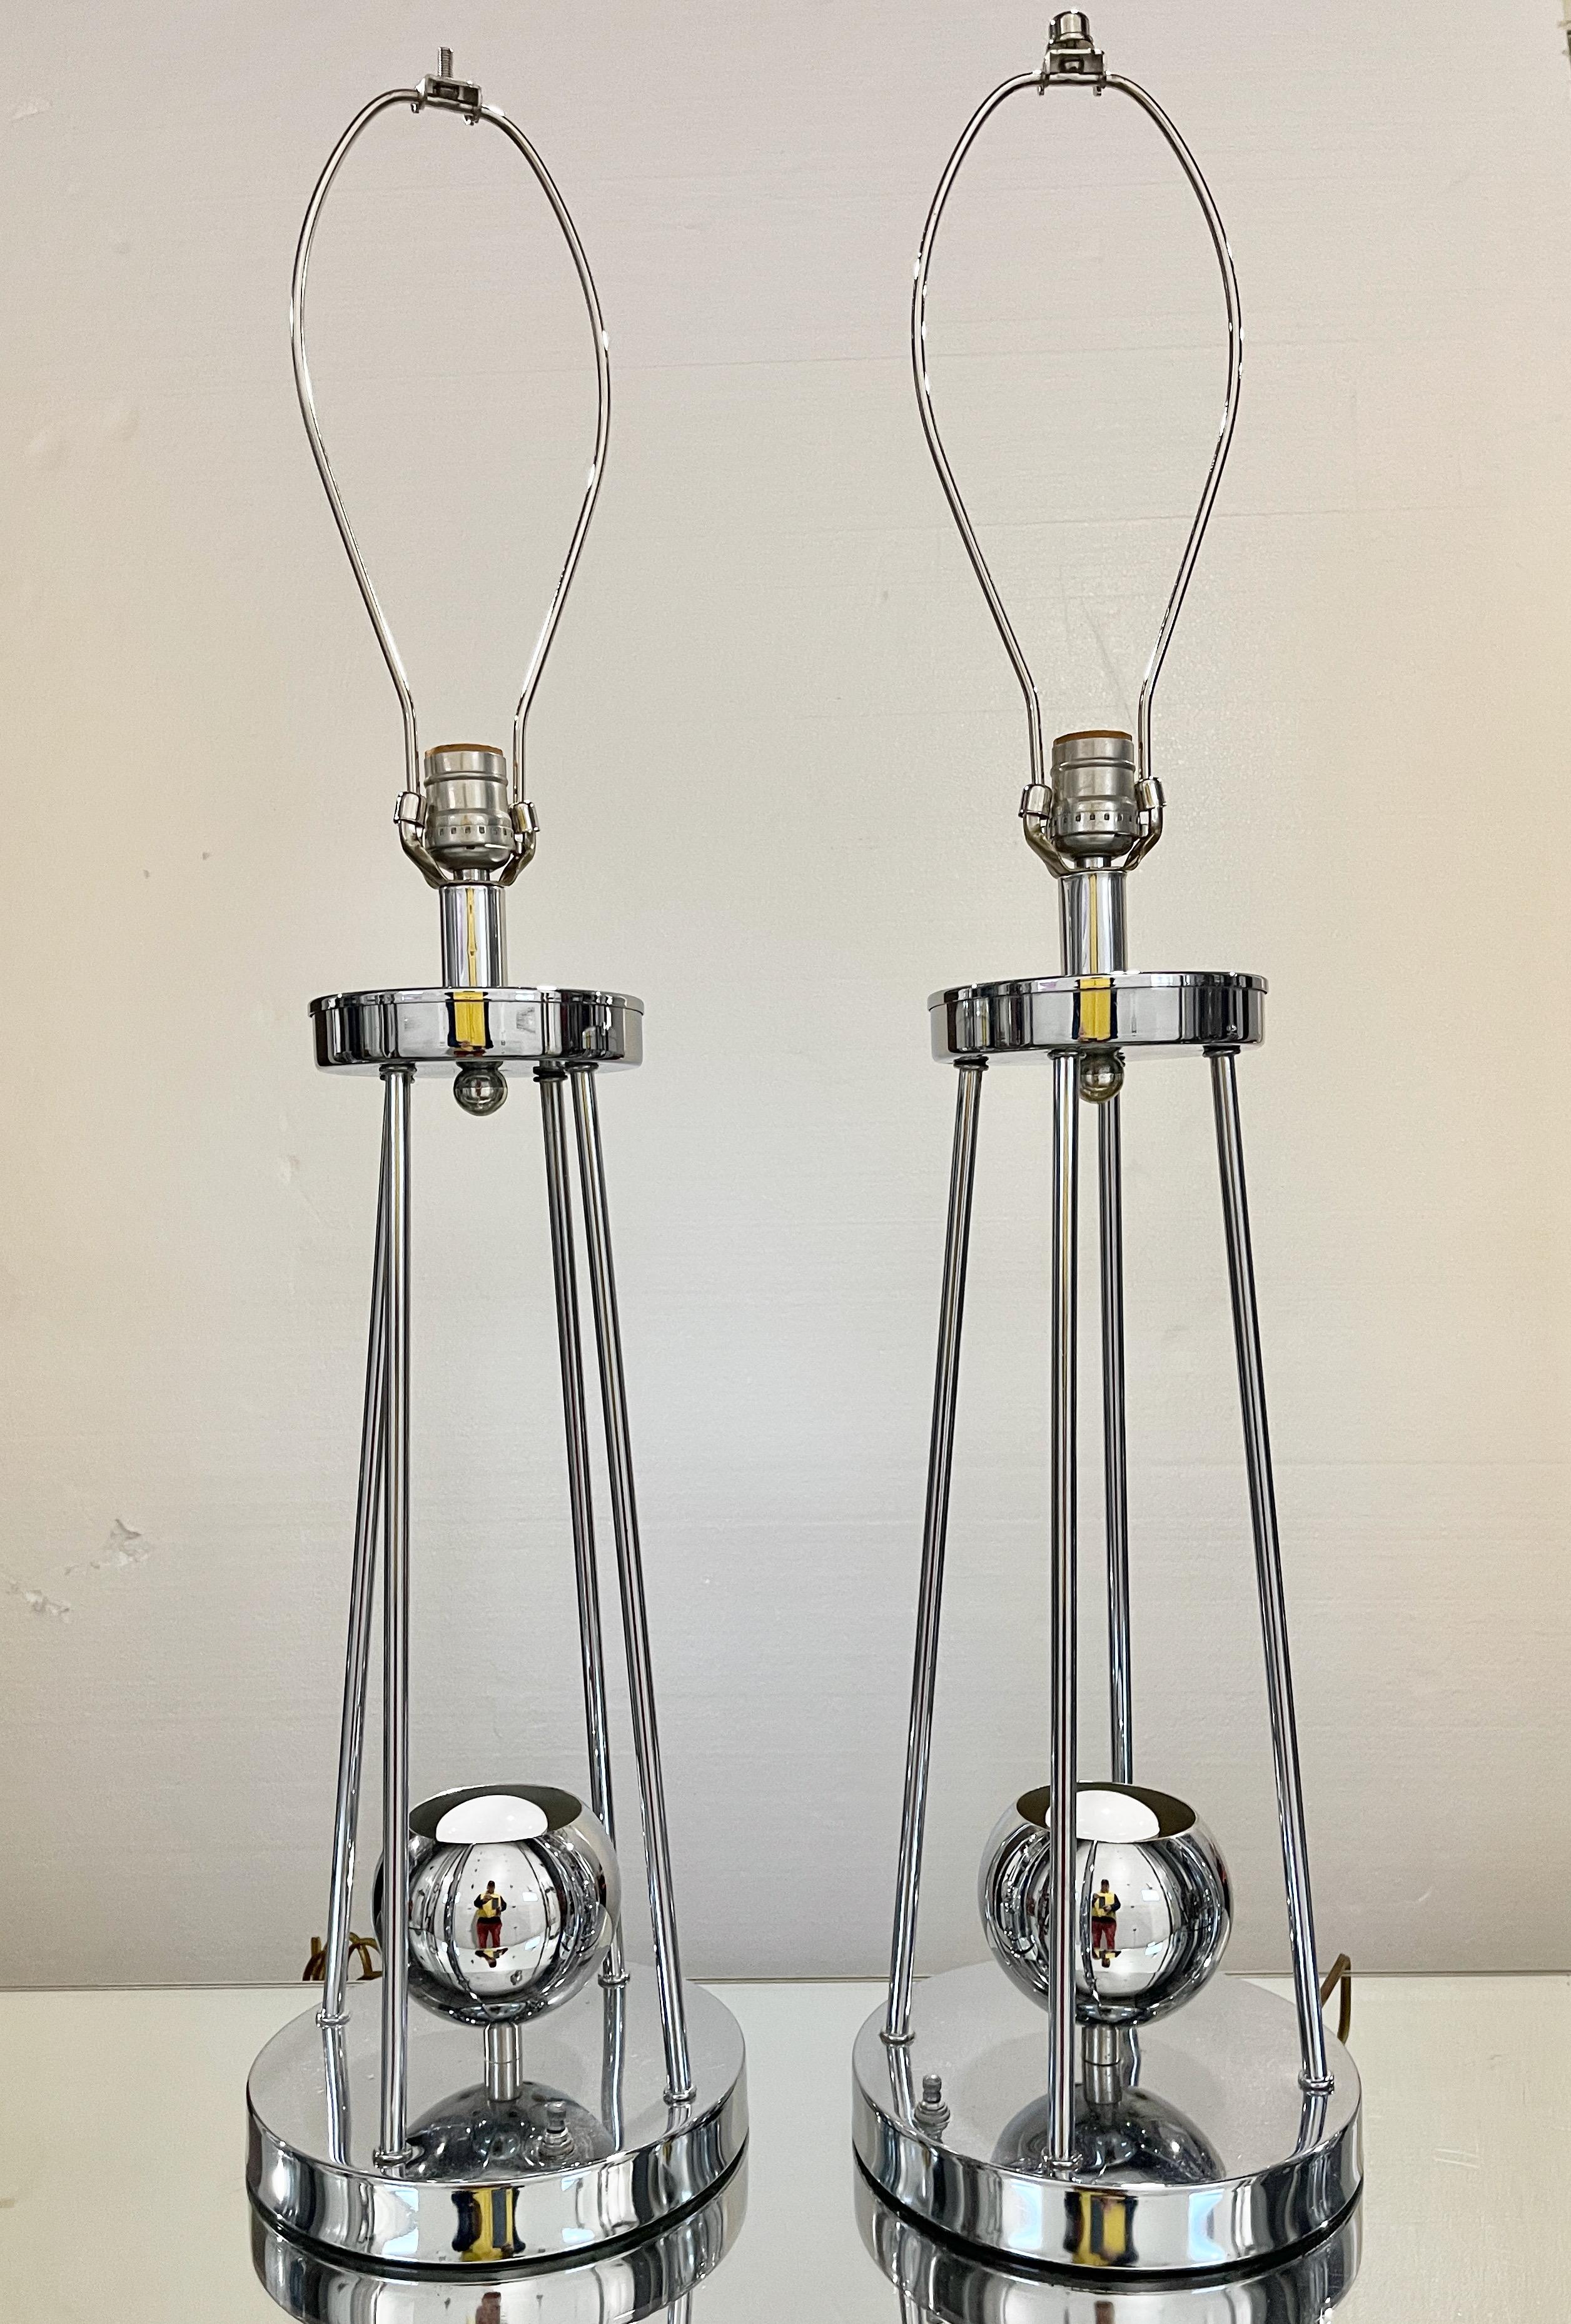 Paire de lampes de table en chrome atomique de l'ère spatiale des années 1970 avec une ampoule à vis Edison standard en haut et un globe oculaire chromé en bas dans lequel vous pouvez utiliser une petite ampoule spot/flood ou une ampoule chromée en